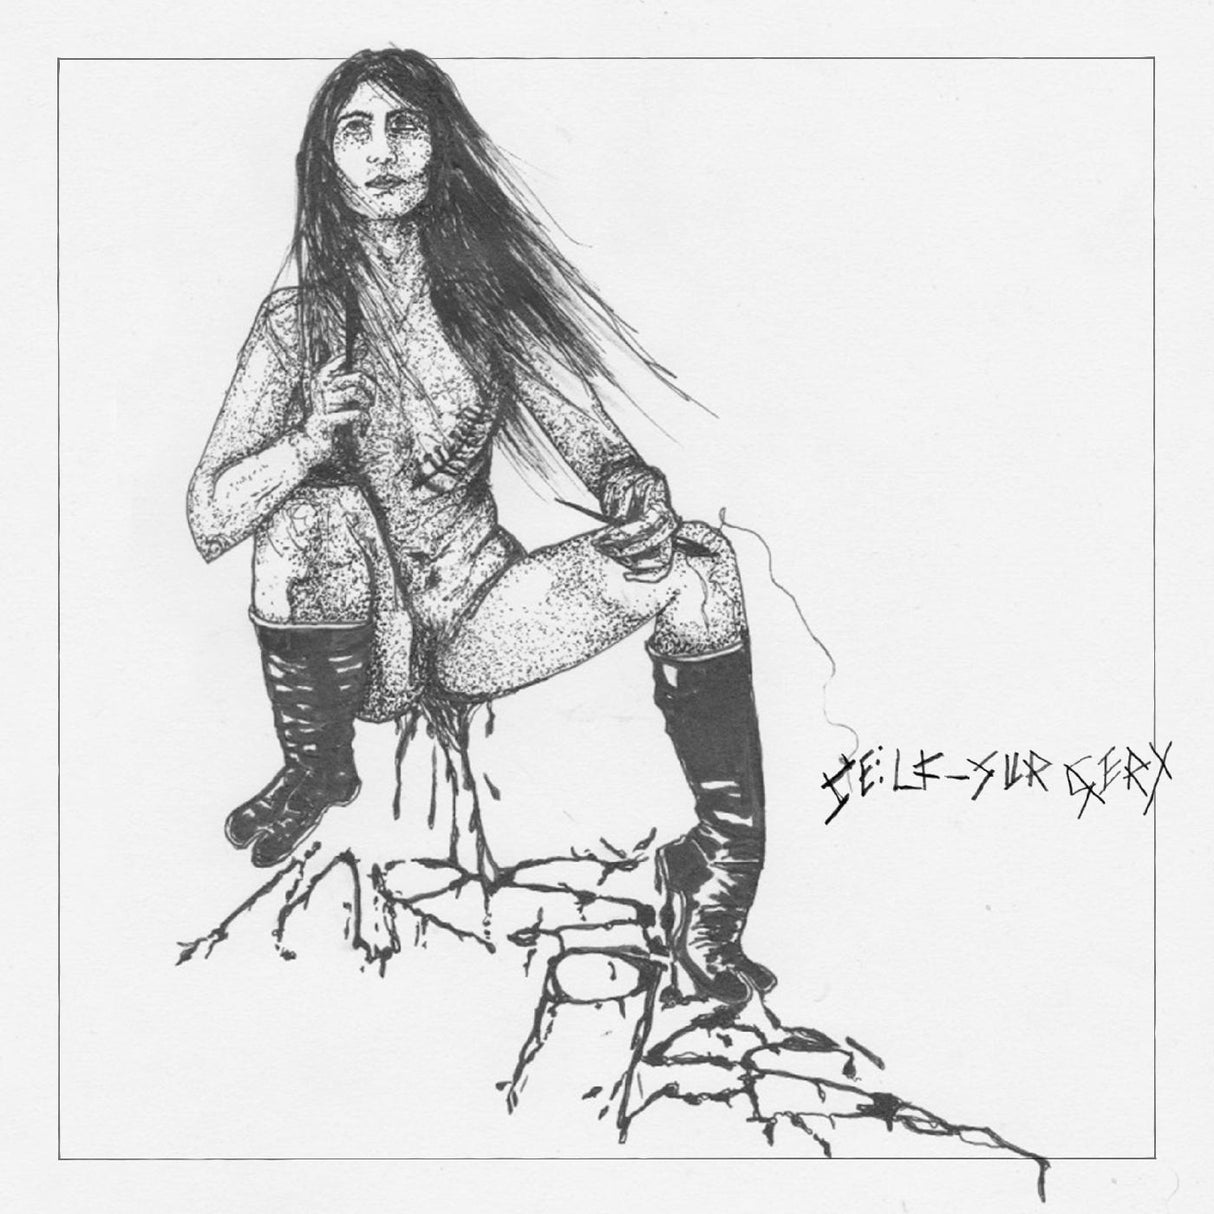 Mrs. Piss Self-Surgery [CD]